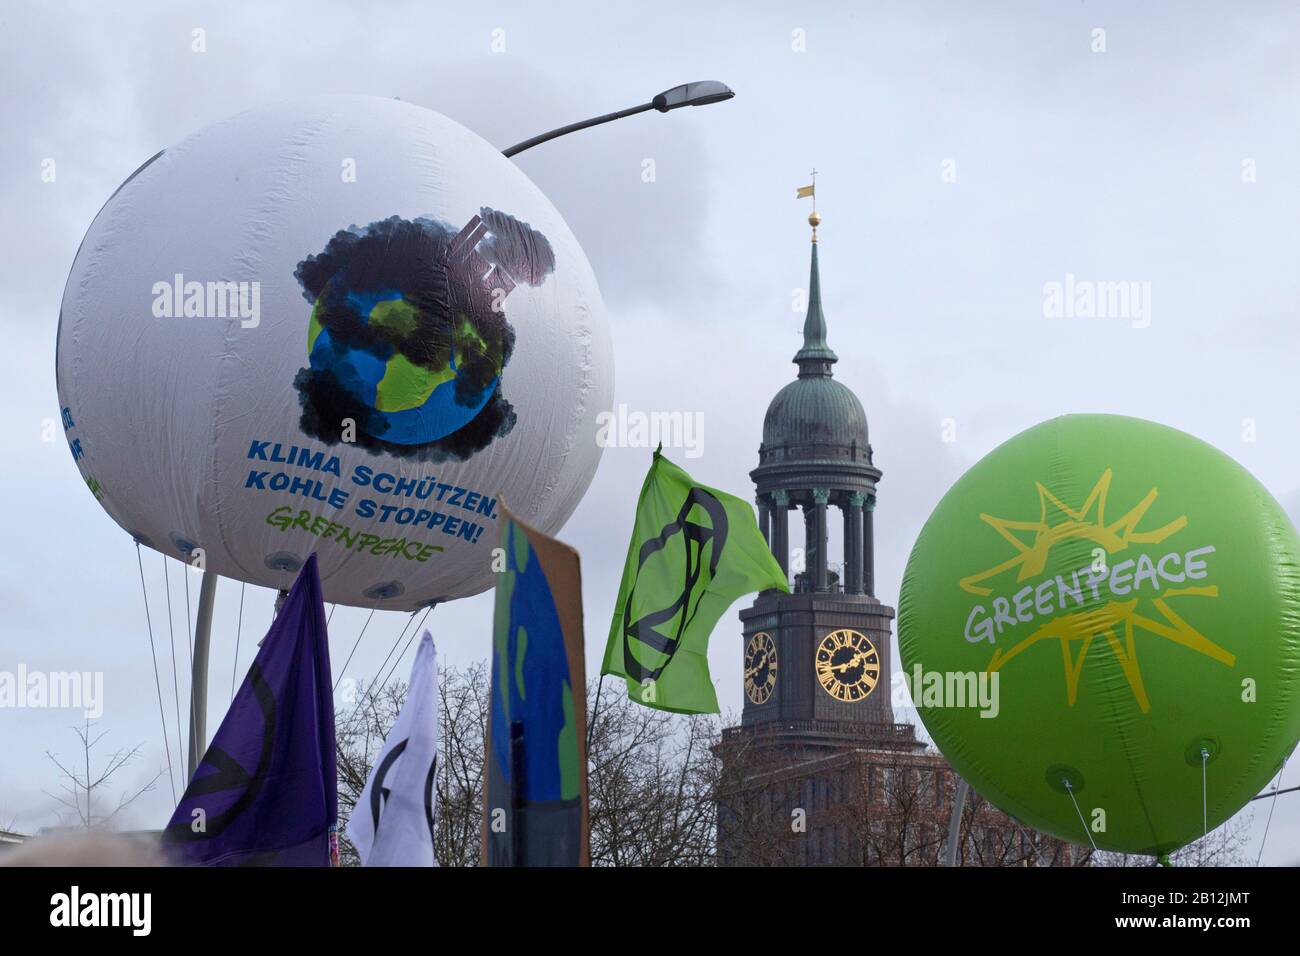 Des ballons Greenpeace le vendredi Pour une Future manifestation à Hambourg, en Allemagne, le 21 février 2020 Banque D'Images